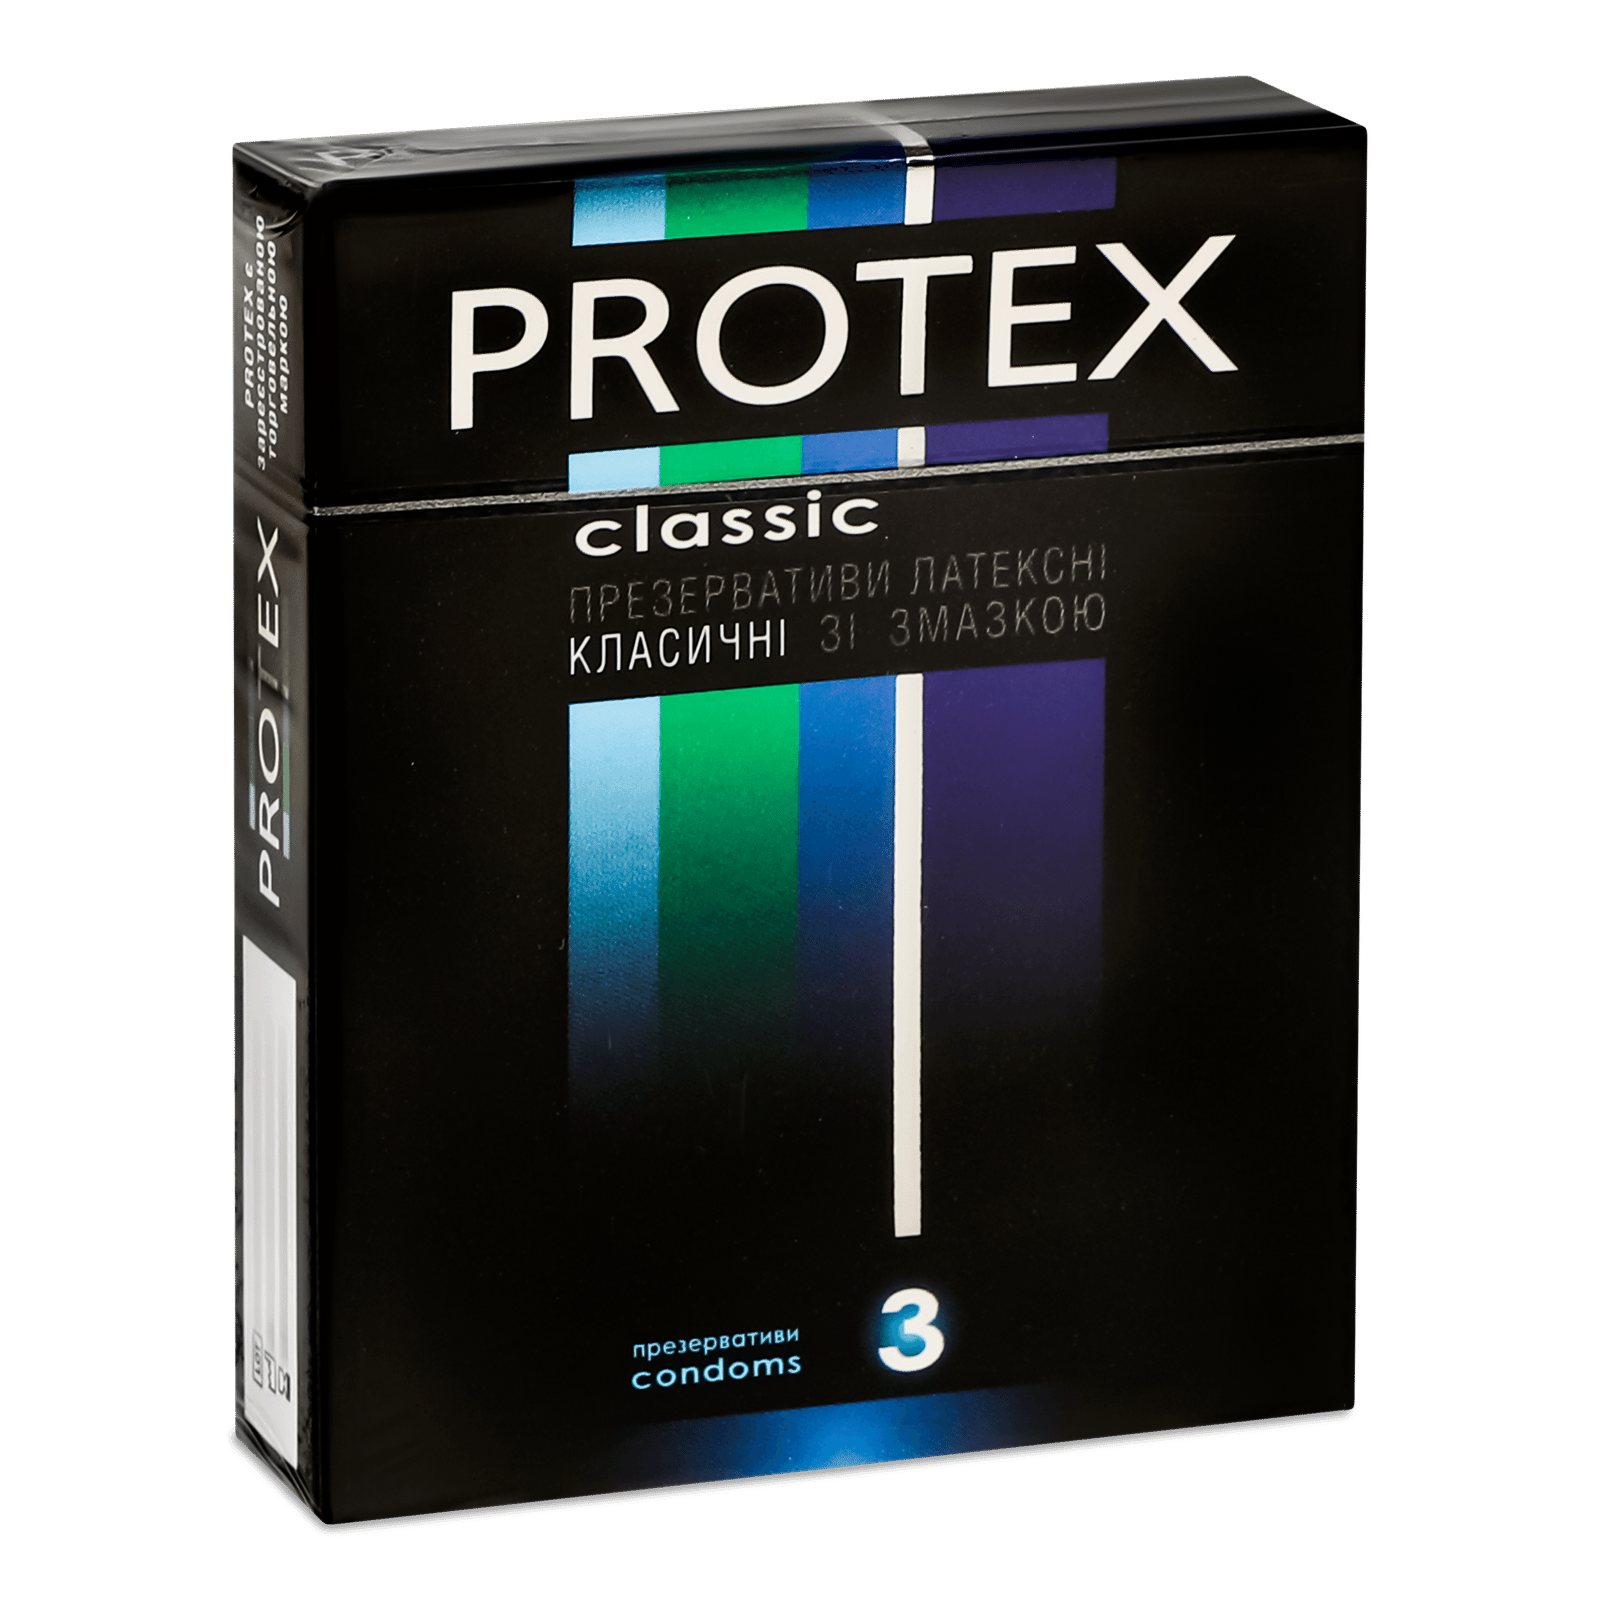 Презервативи Protex класичні зі змазкою - 1